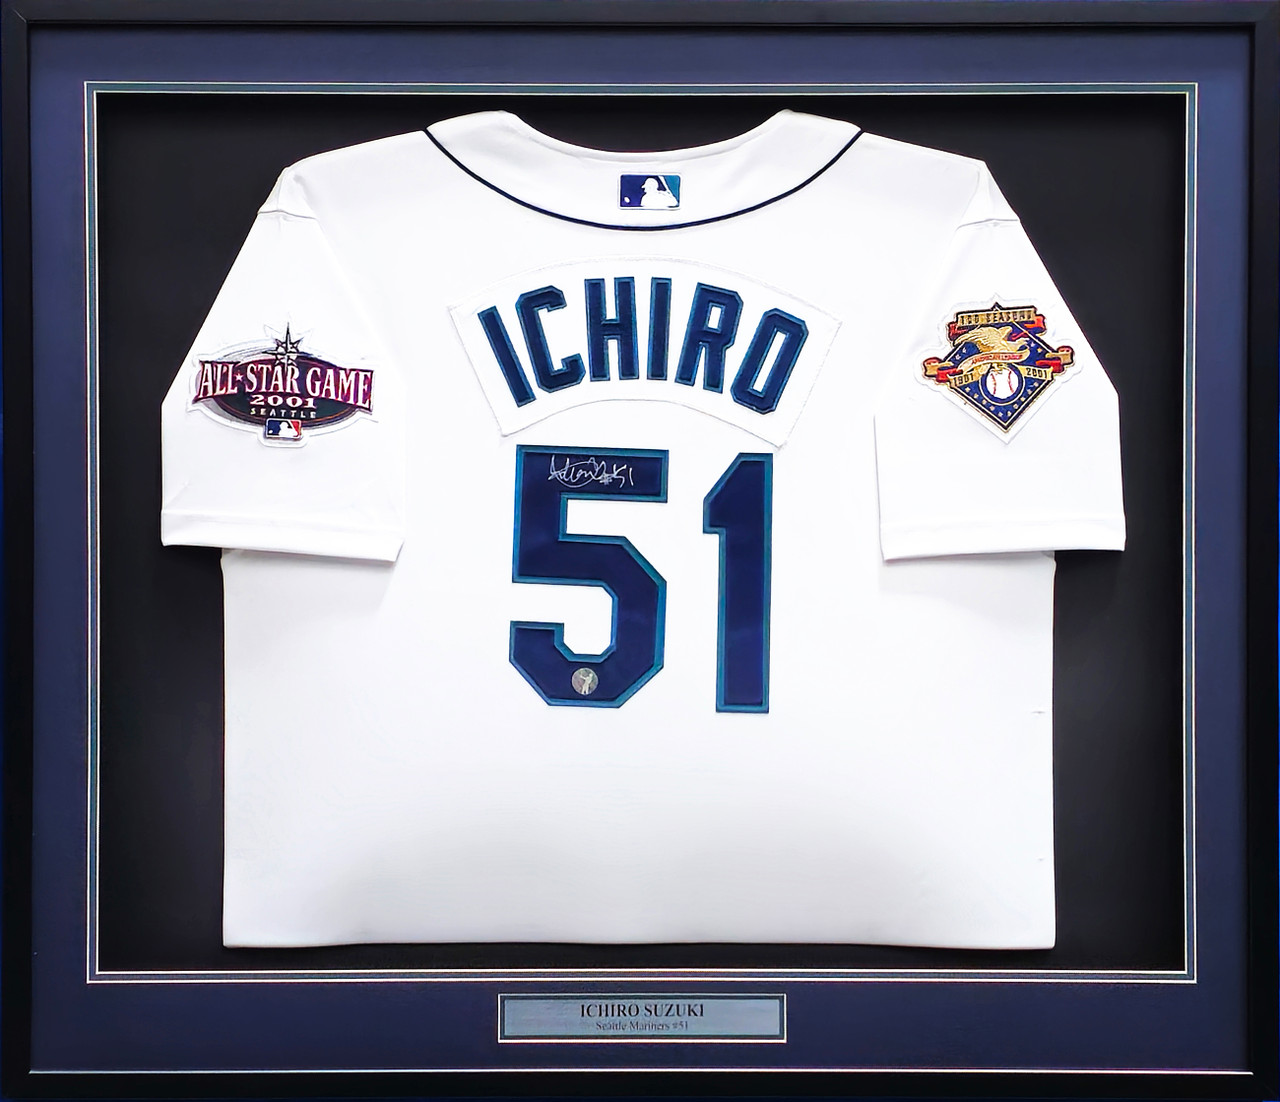 Ichiro Suzuki Mariners jersey